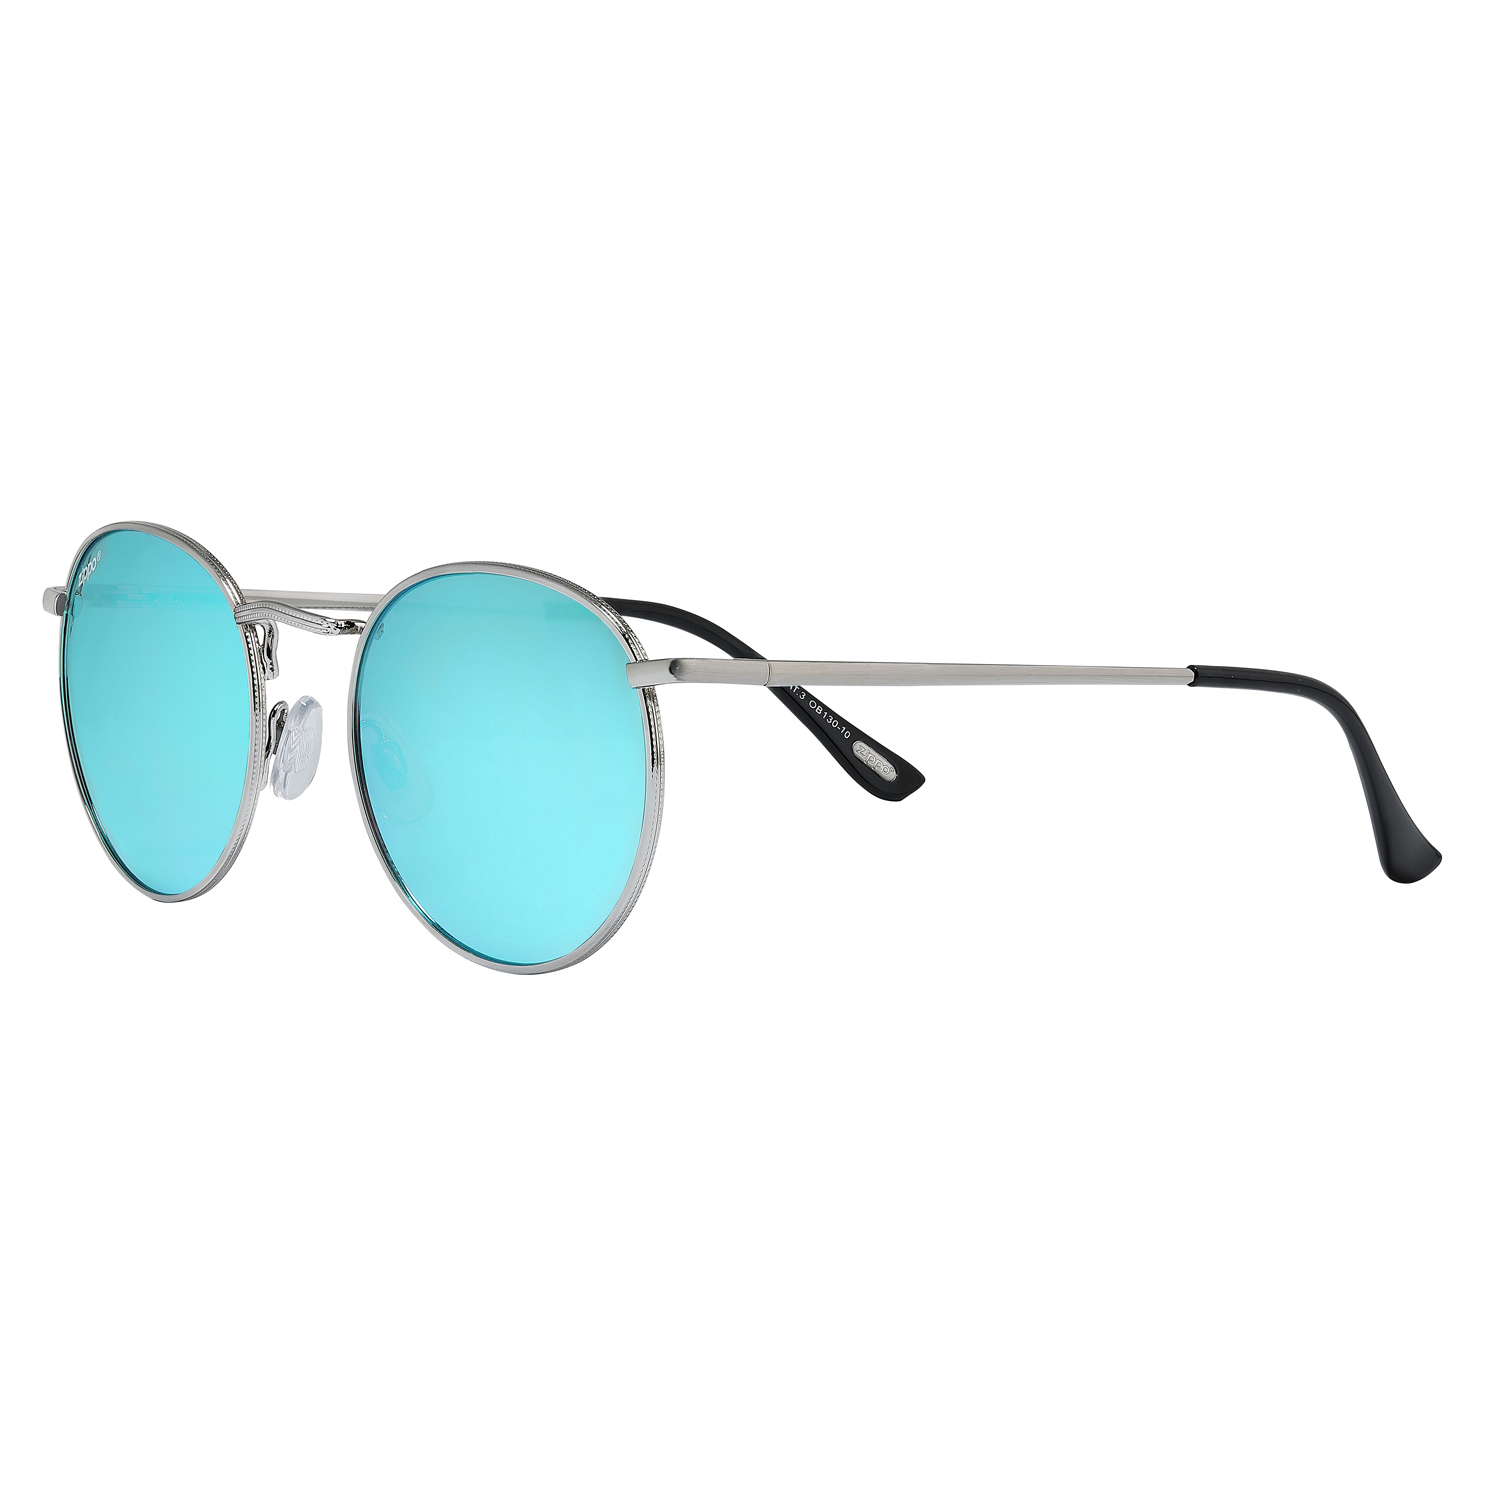 Солнцезащитные очки унисекс Zippo OB130 серебристые/голубые